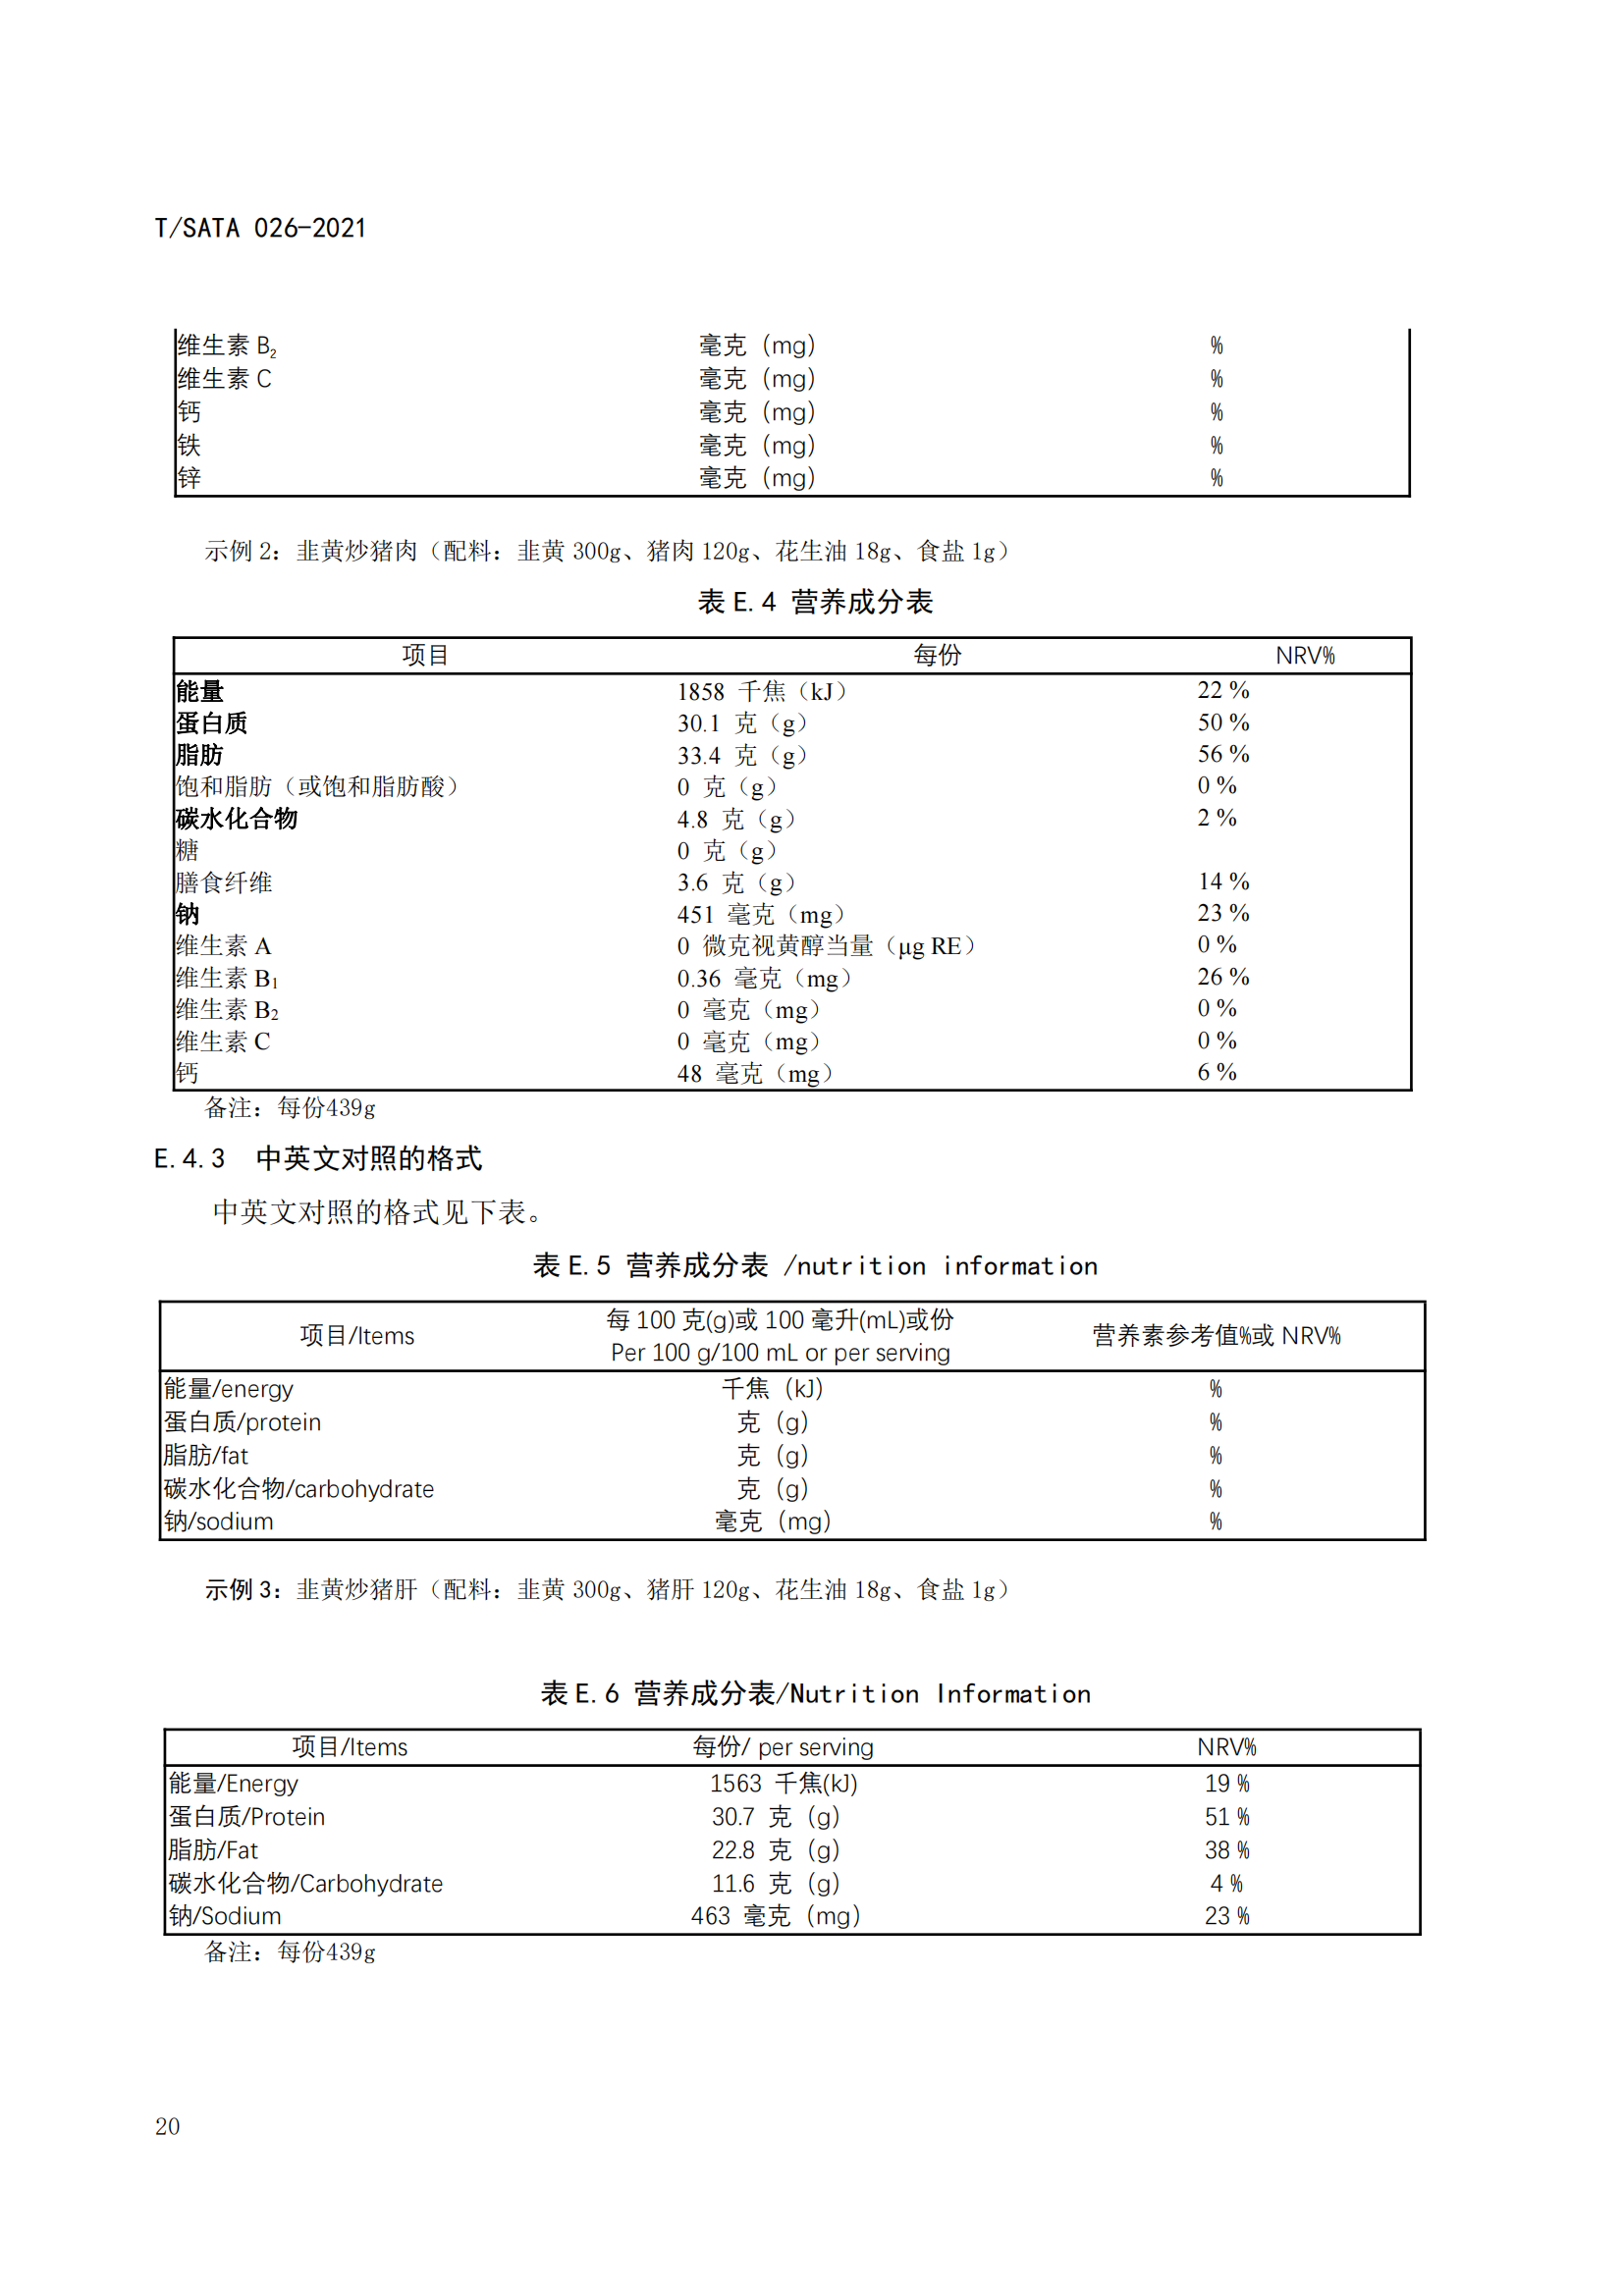 《深圳市校外集中配送学生餐操作规范》团体标准（发布版）2021.11.18终_22.png